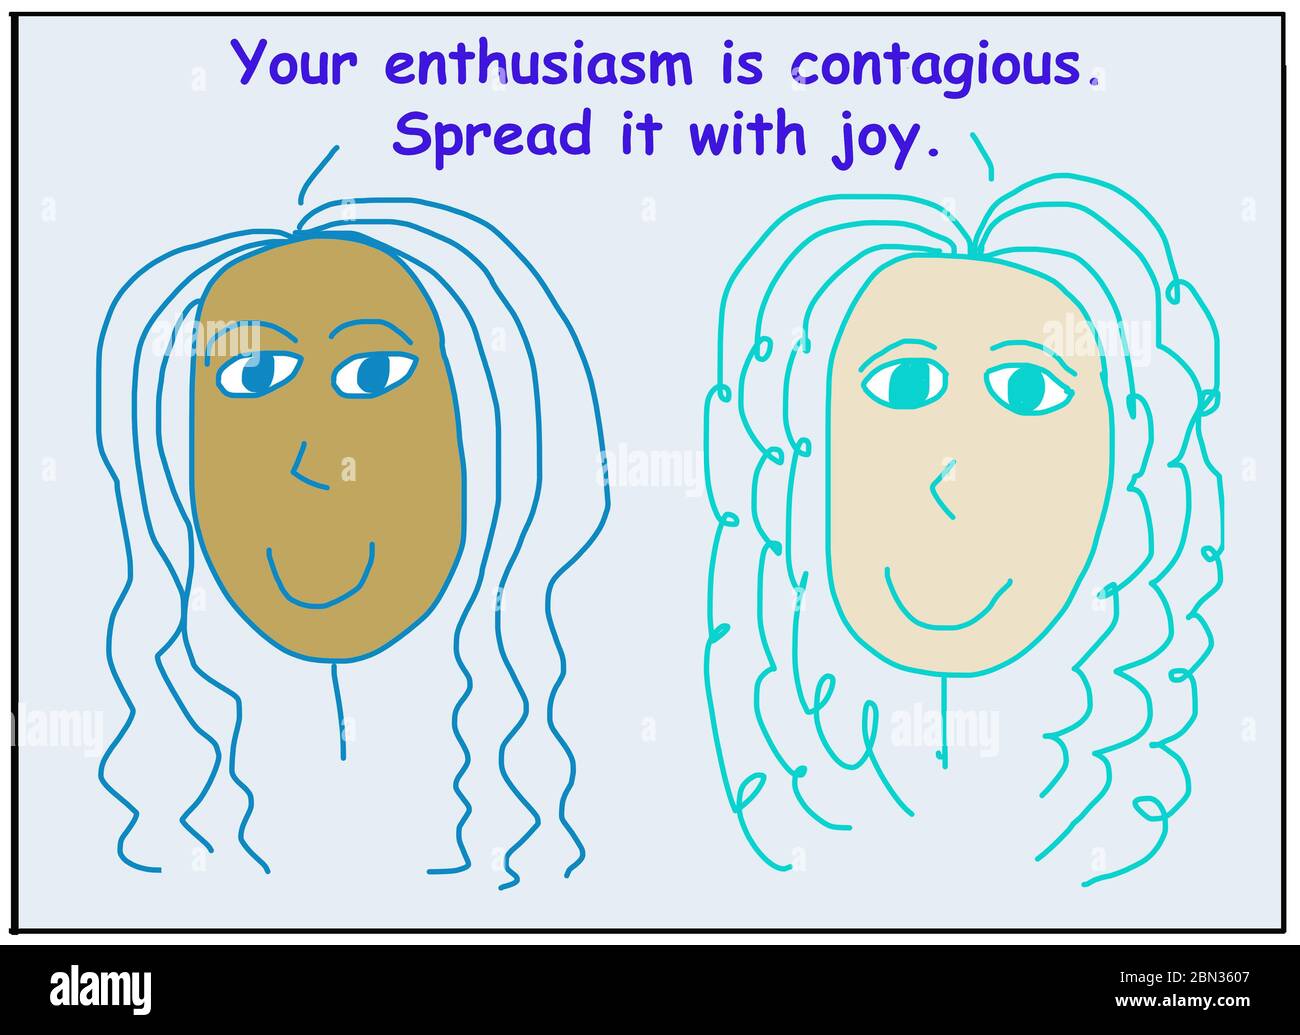 Dibujos animados de color de dos mujeres sonrientes y étnicamente diversas que están diciendo que su entusiasmo es contagioso, lo difunden con alegría. Foto de stock